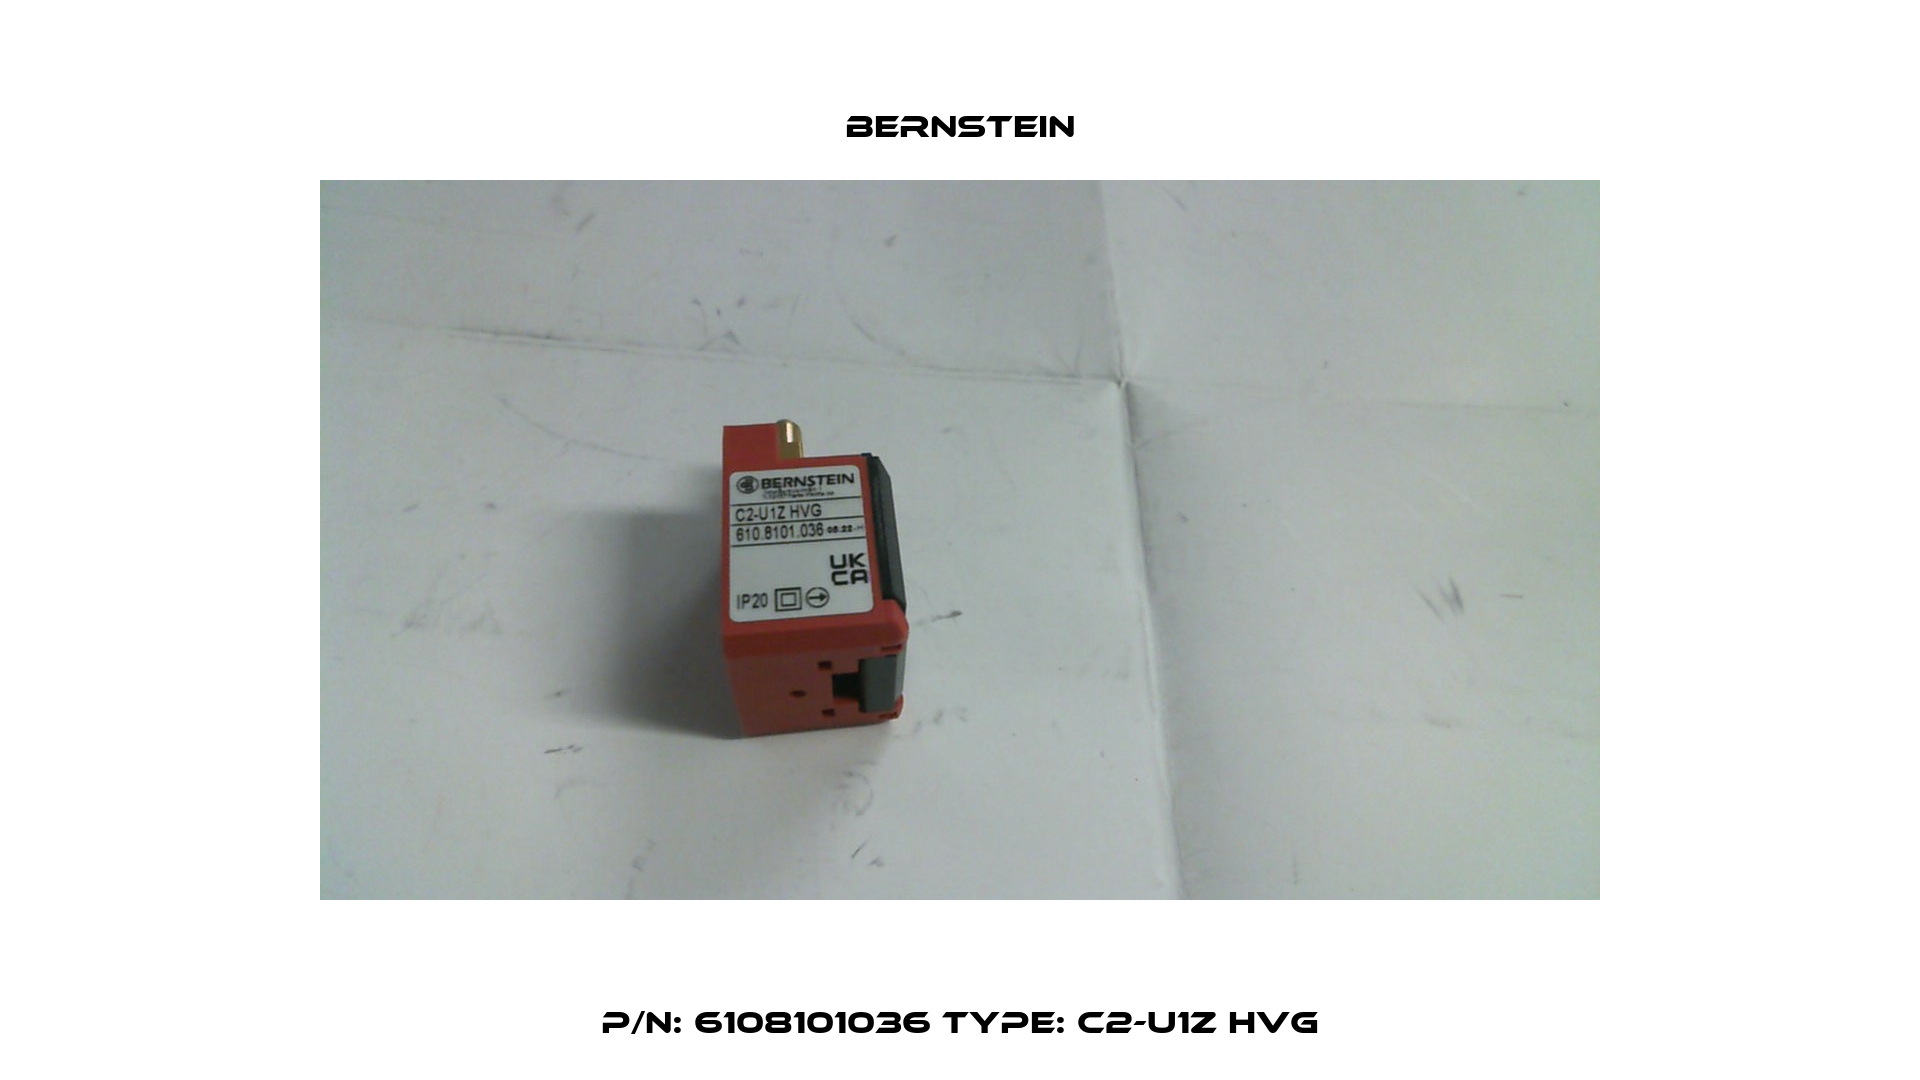 P/N: 6108101036 Type: C2-U1Z HvG Bernstein